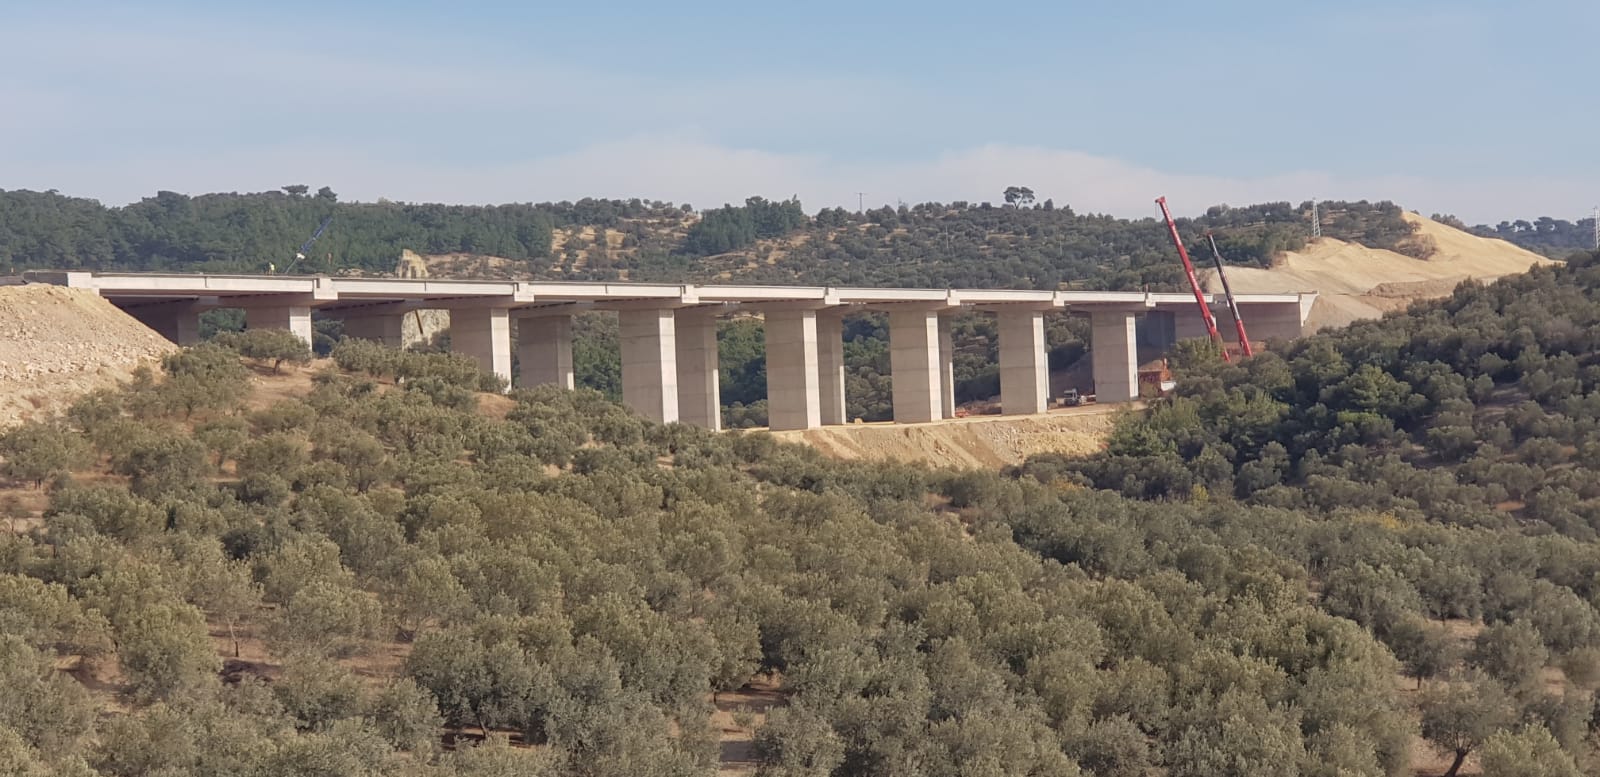 İzmir Menemen-Aliağa-Çandarlı Otoyol Projesi Kapsamında 56000 M3 Öngerilmeli Köprü Kirişi İmalat, Nakliye Ve Montaj İşi